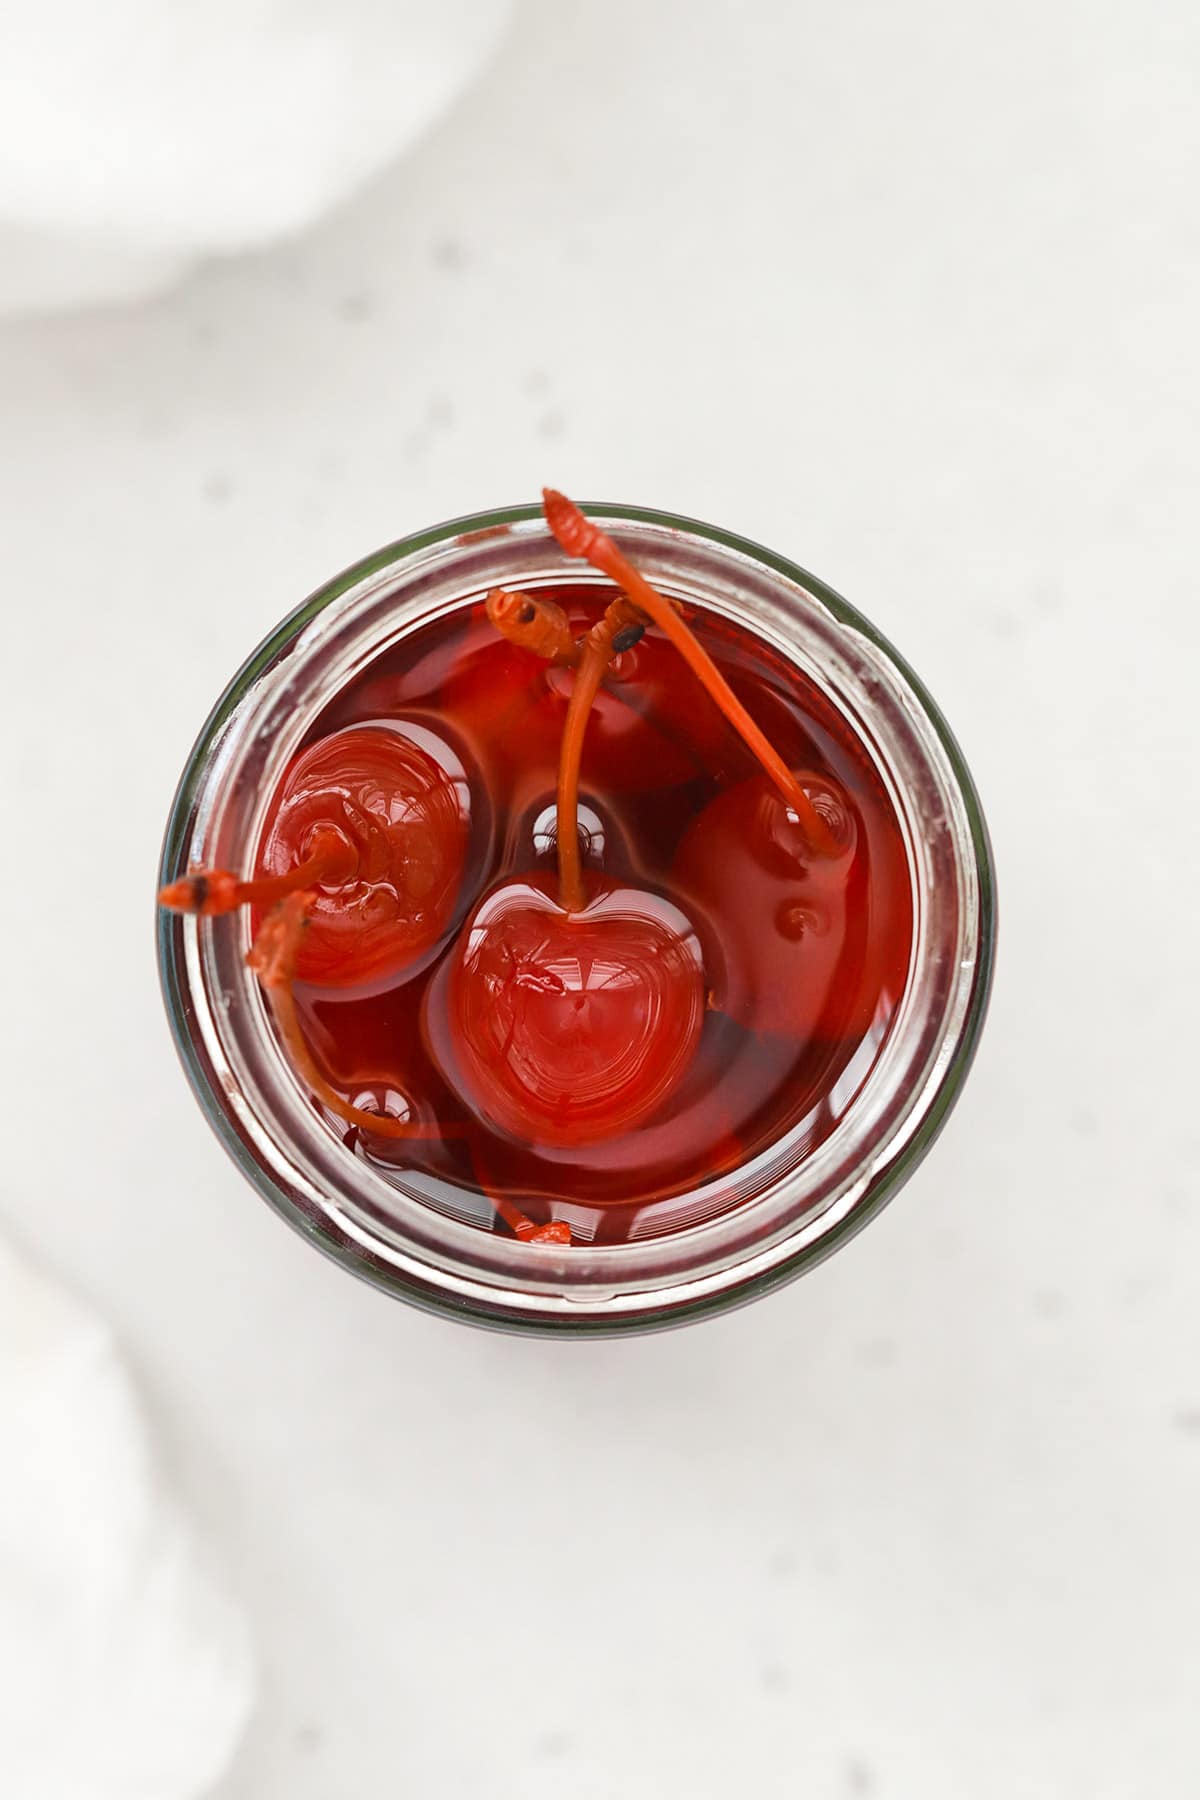 Maraschino cherries to garnish orange juice grenadine mocktails